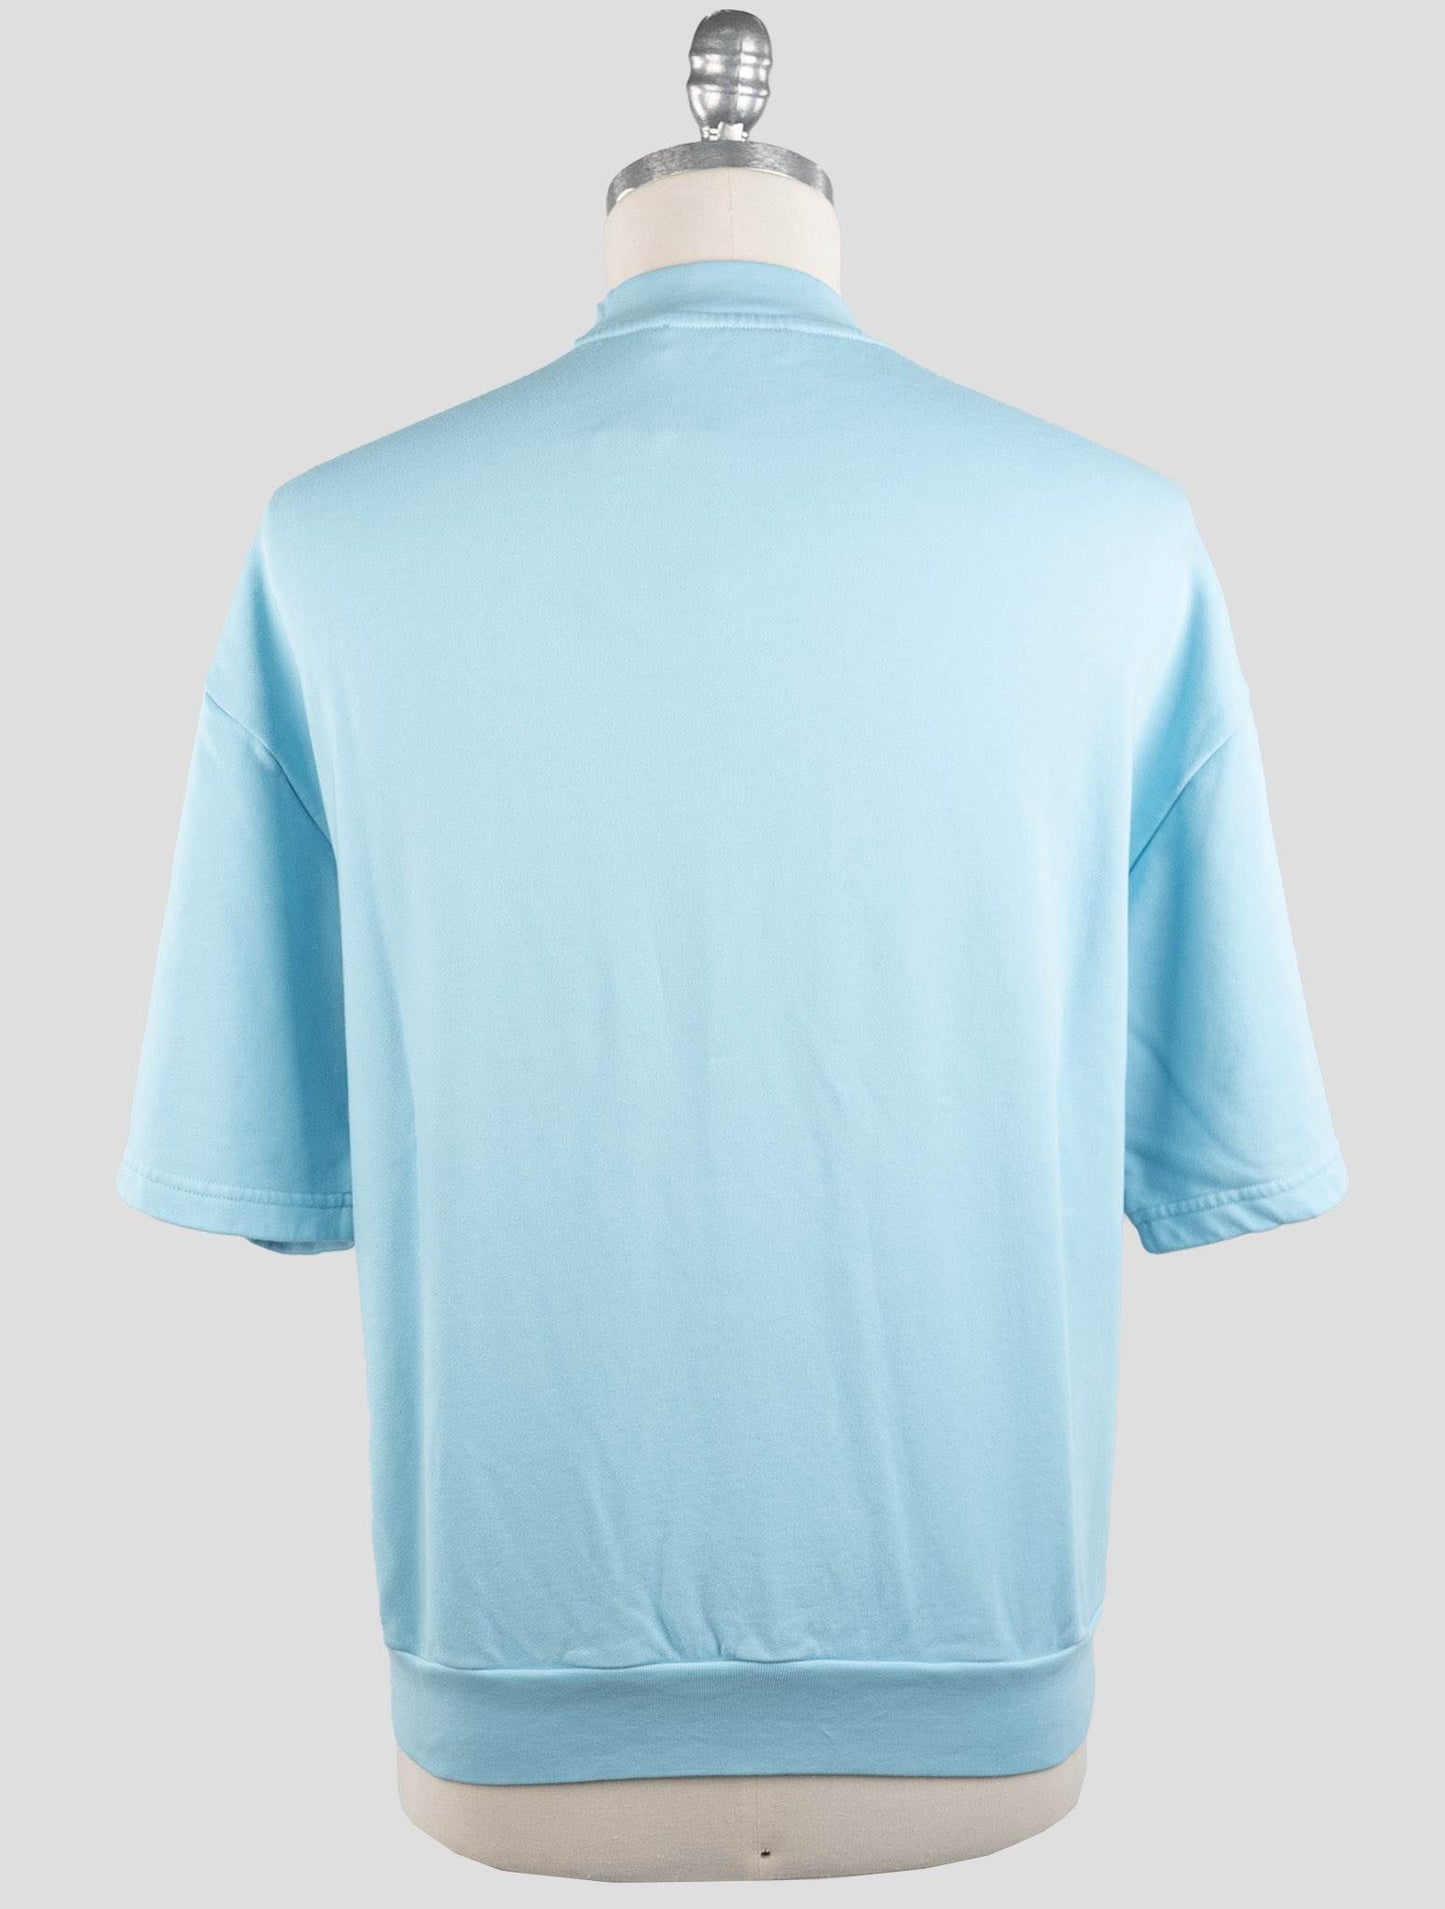 KNT Kiton Light Blue Cotton T-Shirt